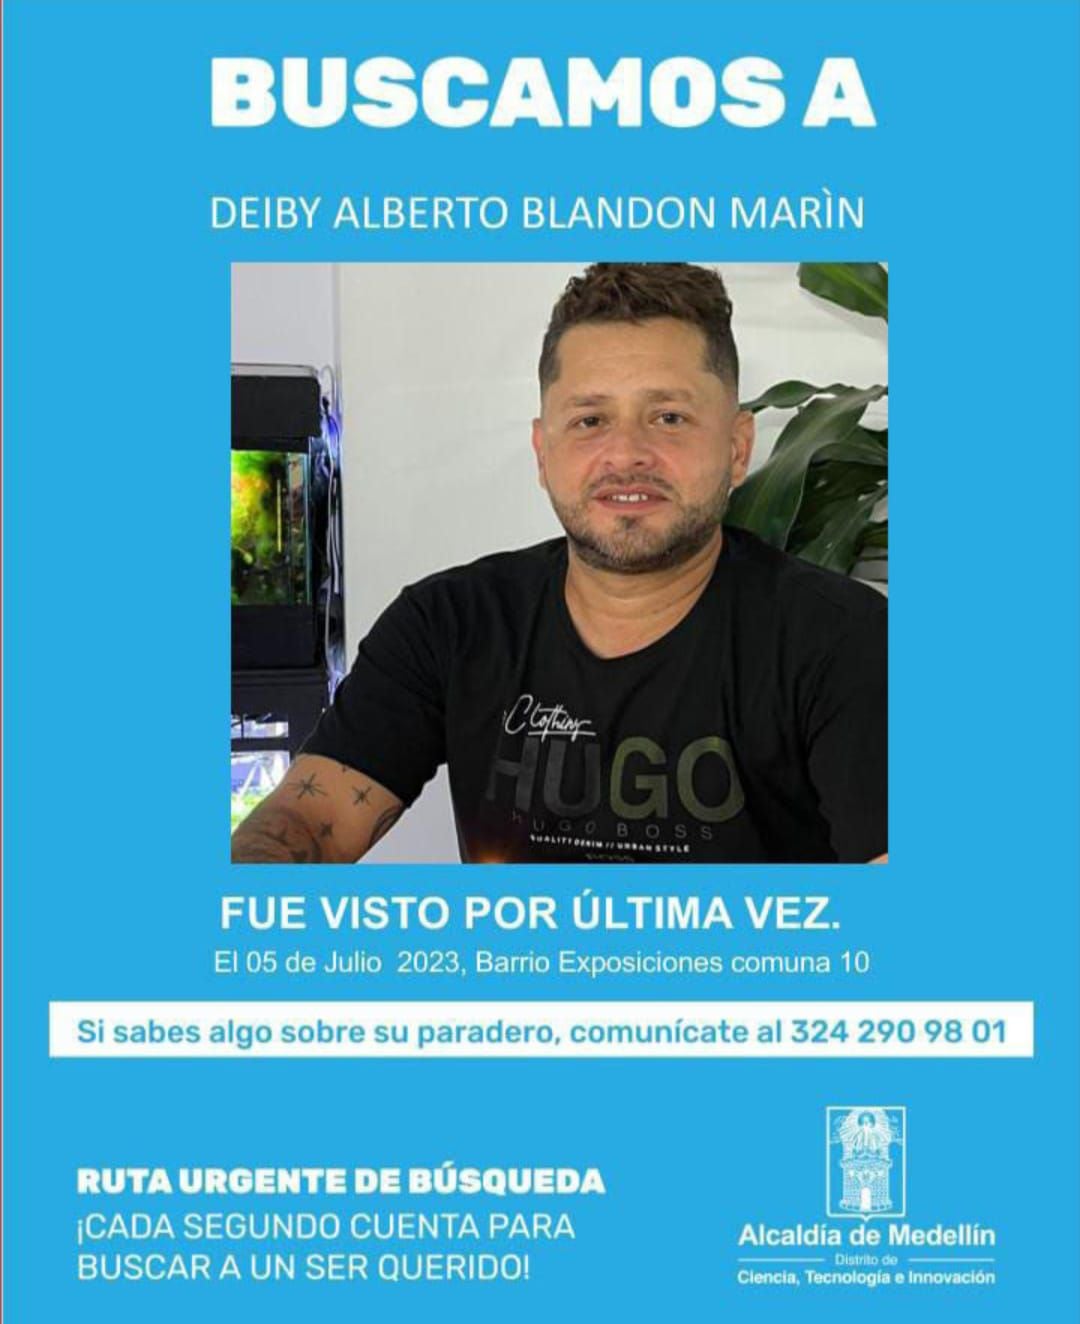 Deiby Alberto Blandón Marín estaba desaparecido desde el 5 de julio.